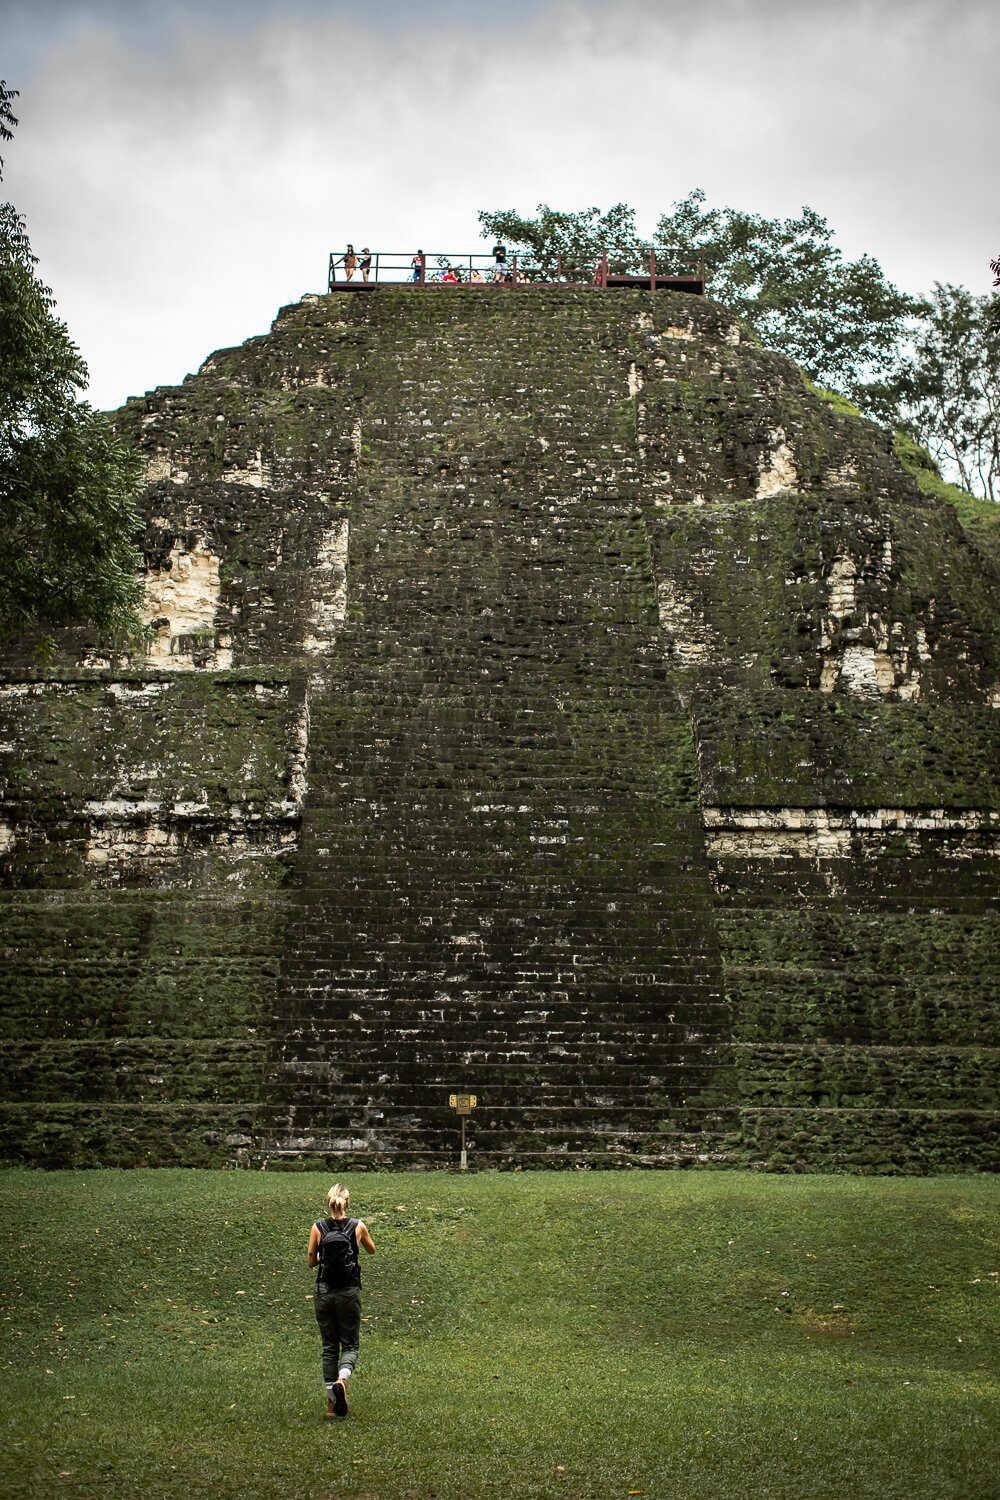 Exploring ancient Mayan ruins in Tikal